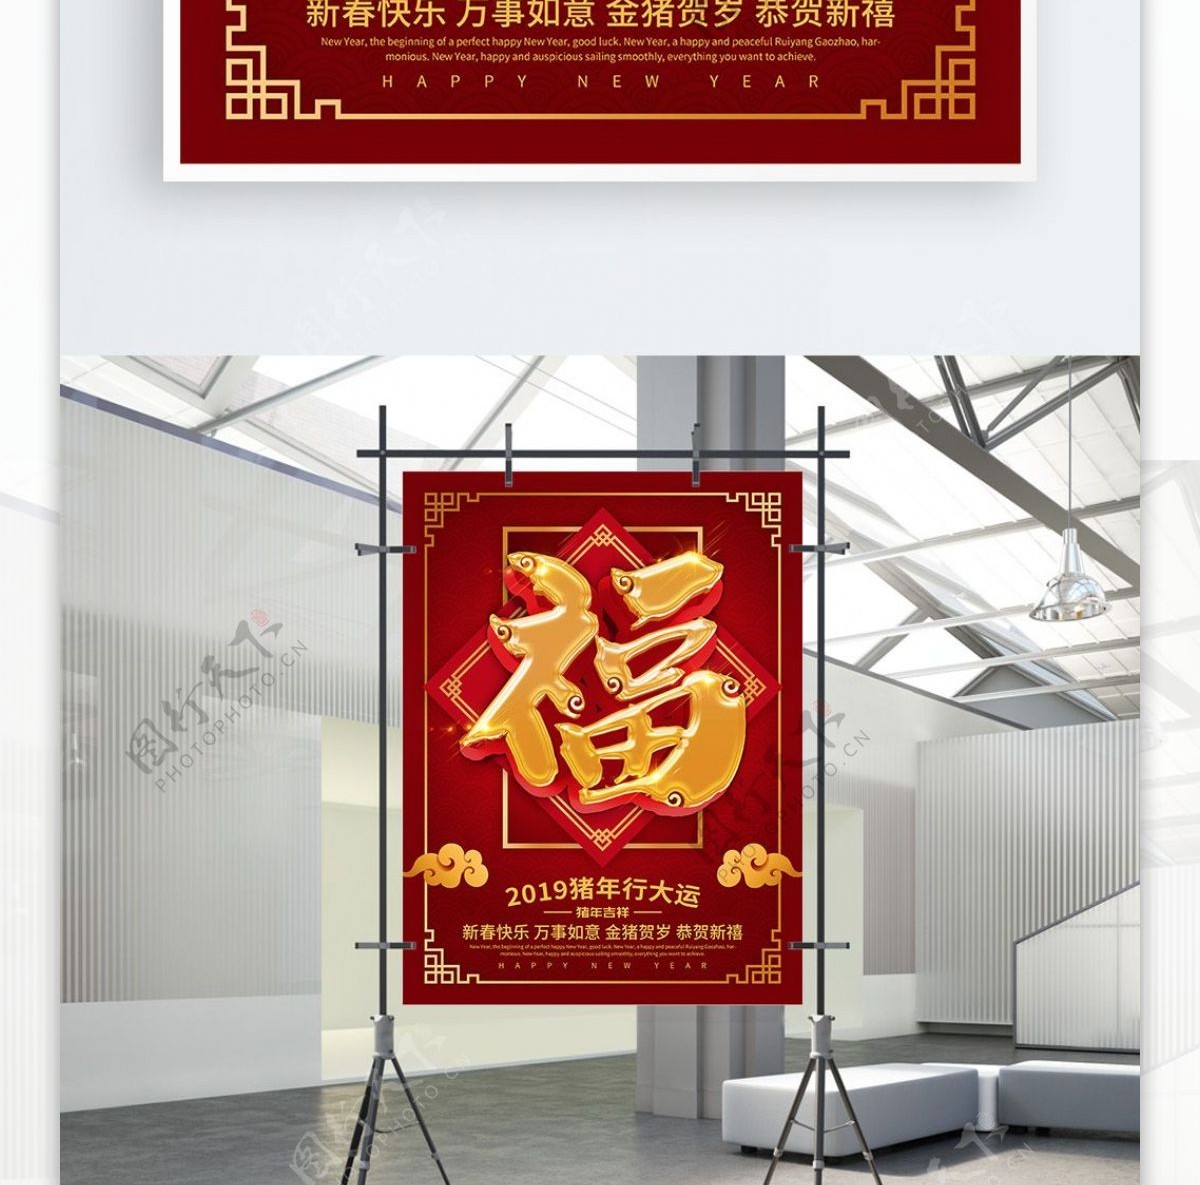 红色喜庆新春福字海报设计